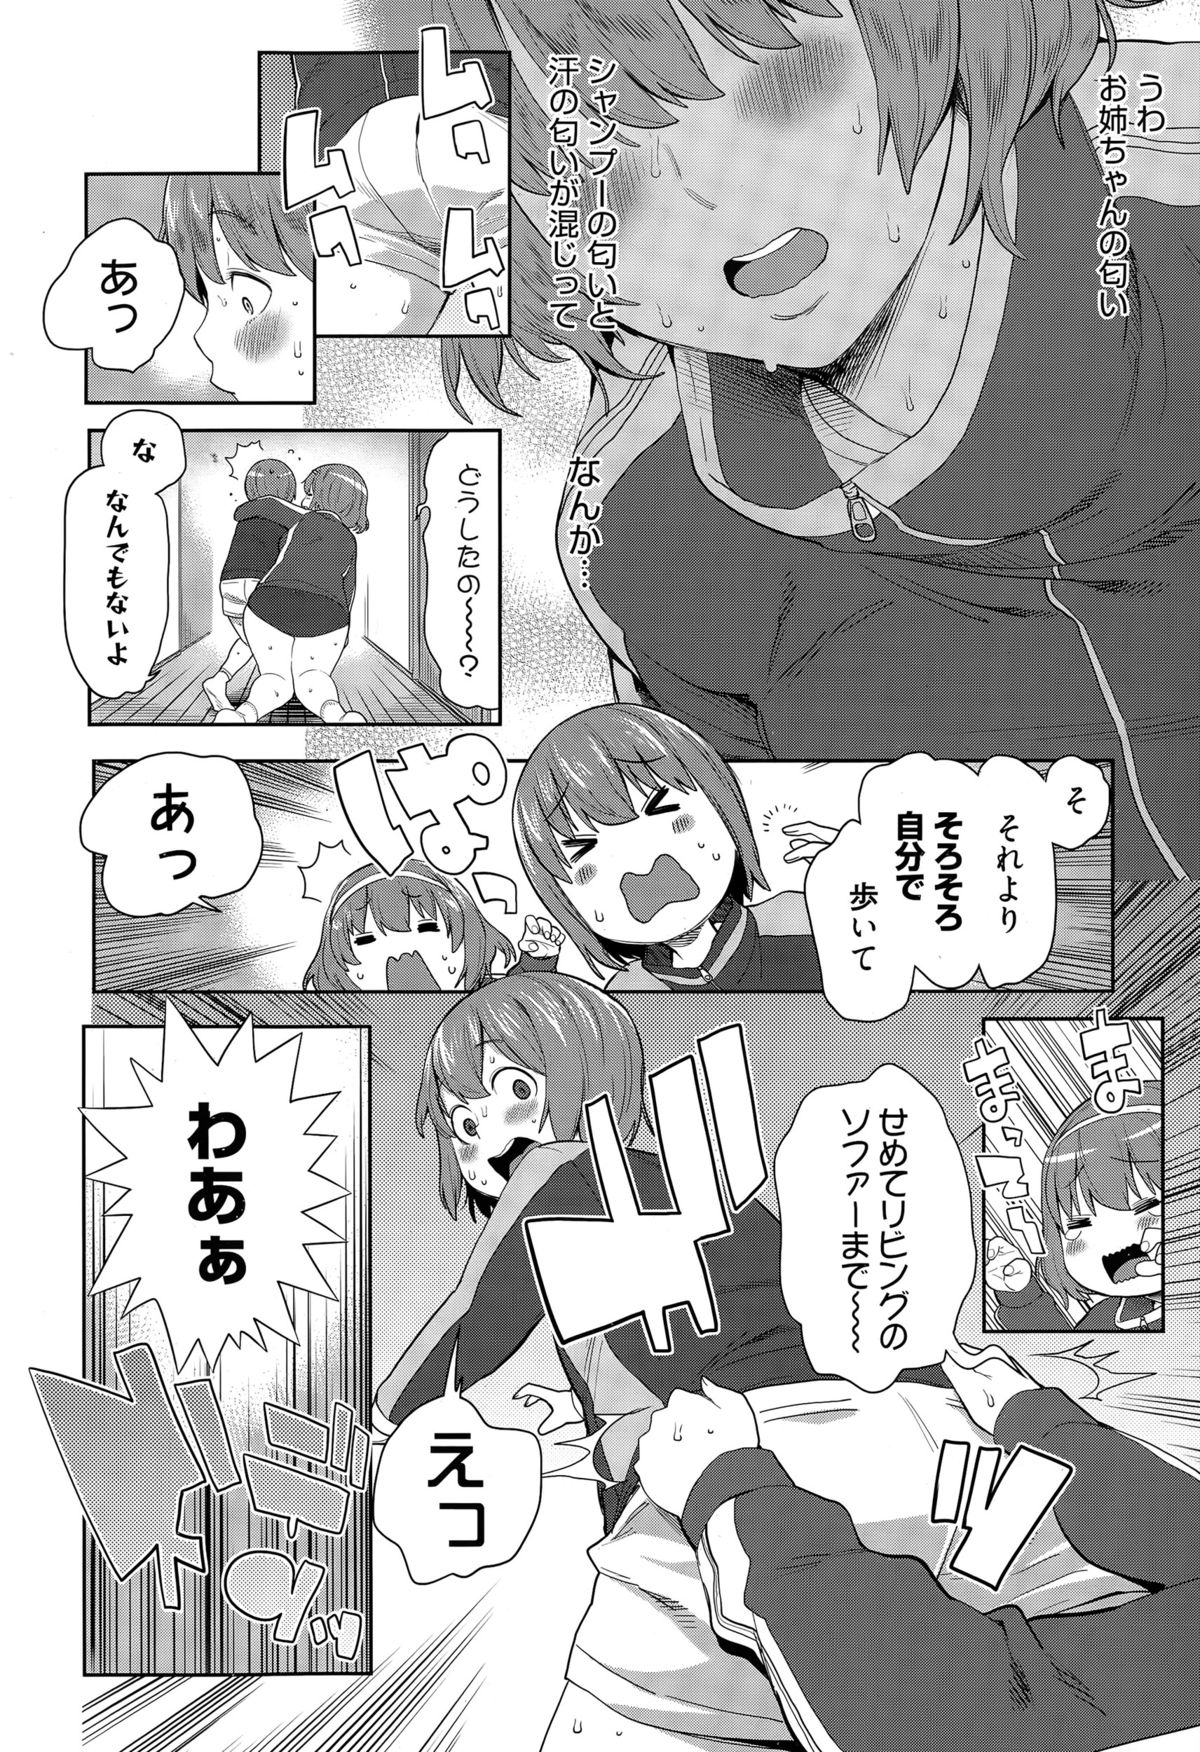 Manga Bangaichi 2015-05 page 48 full